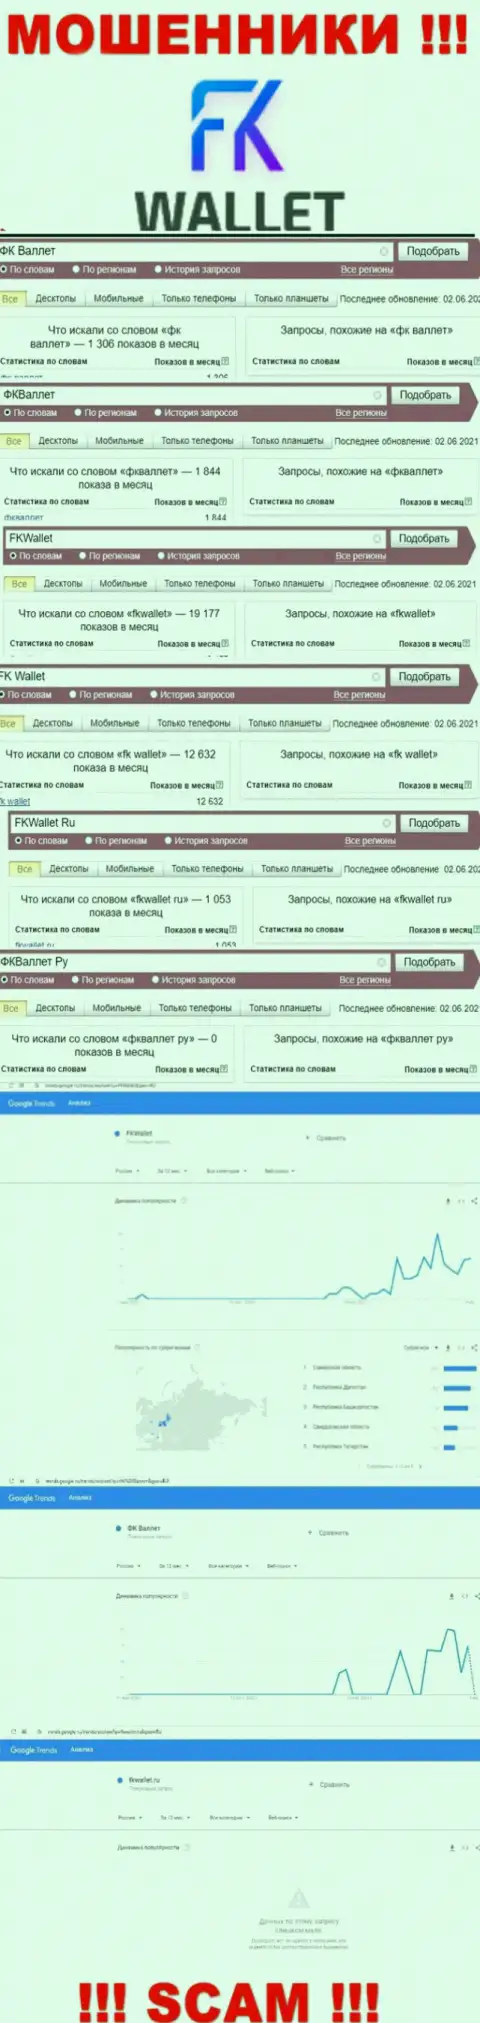 Скрин статистических данных онлайн-запросов по преступно действующей компании FKWallet Ru